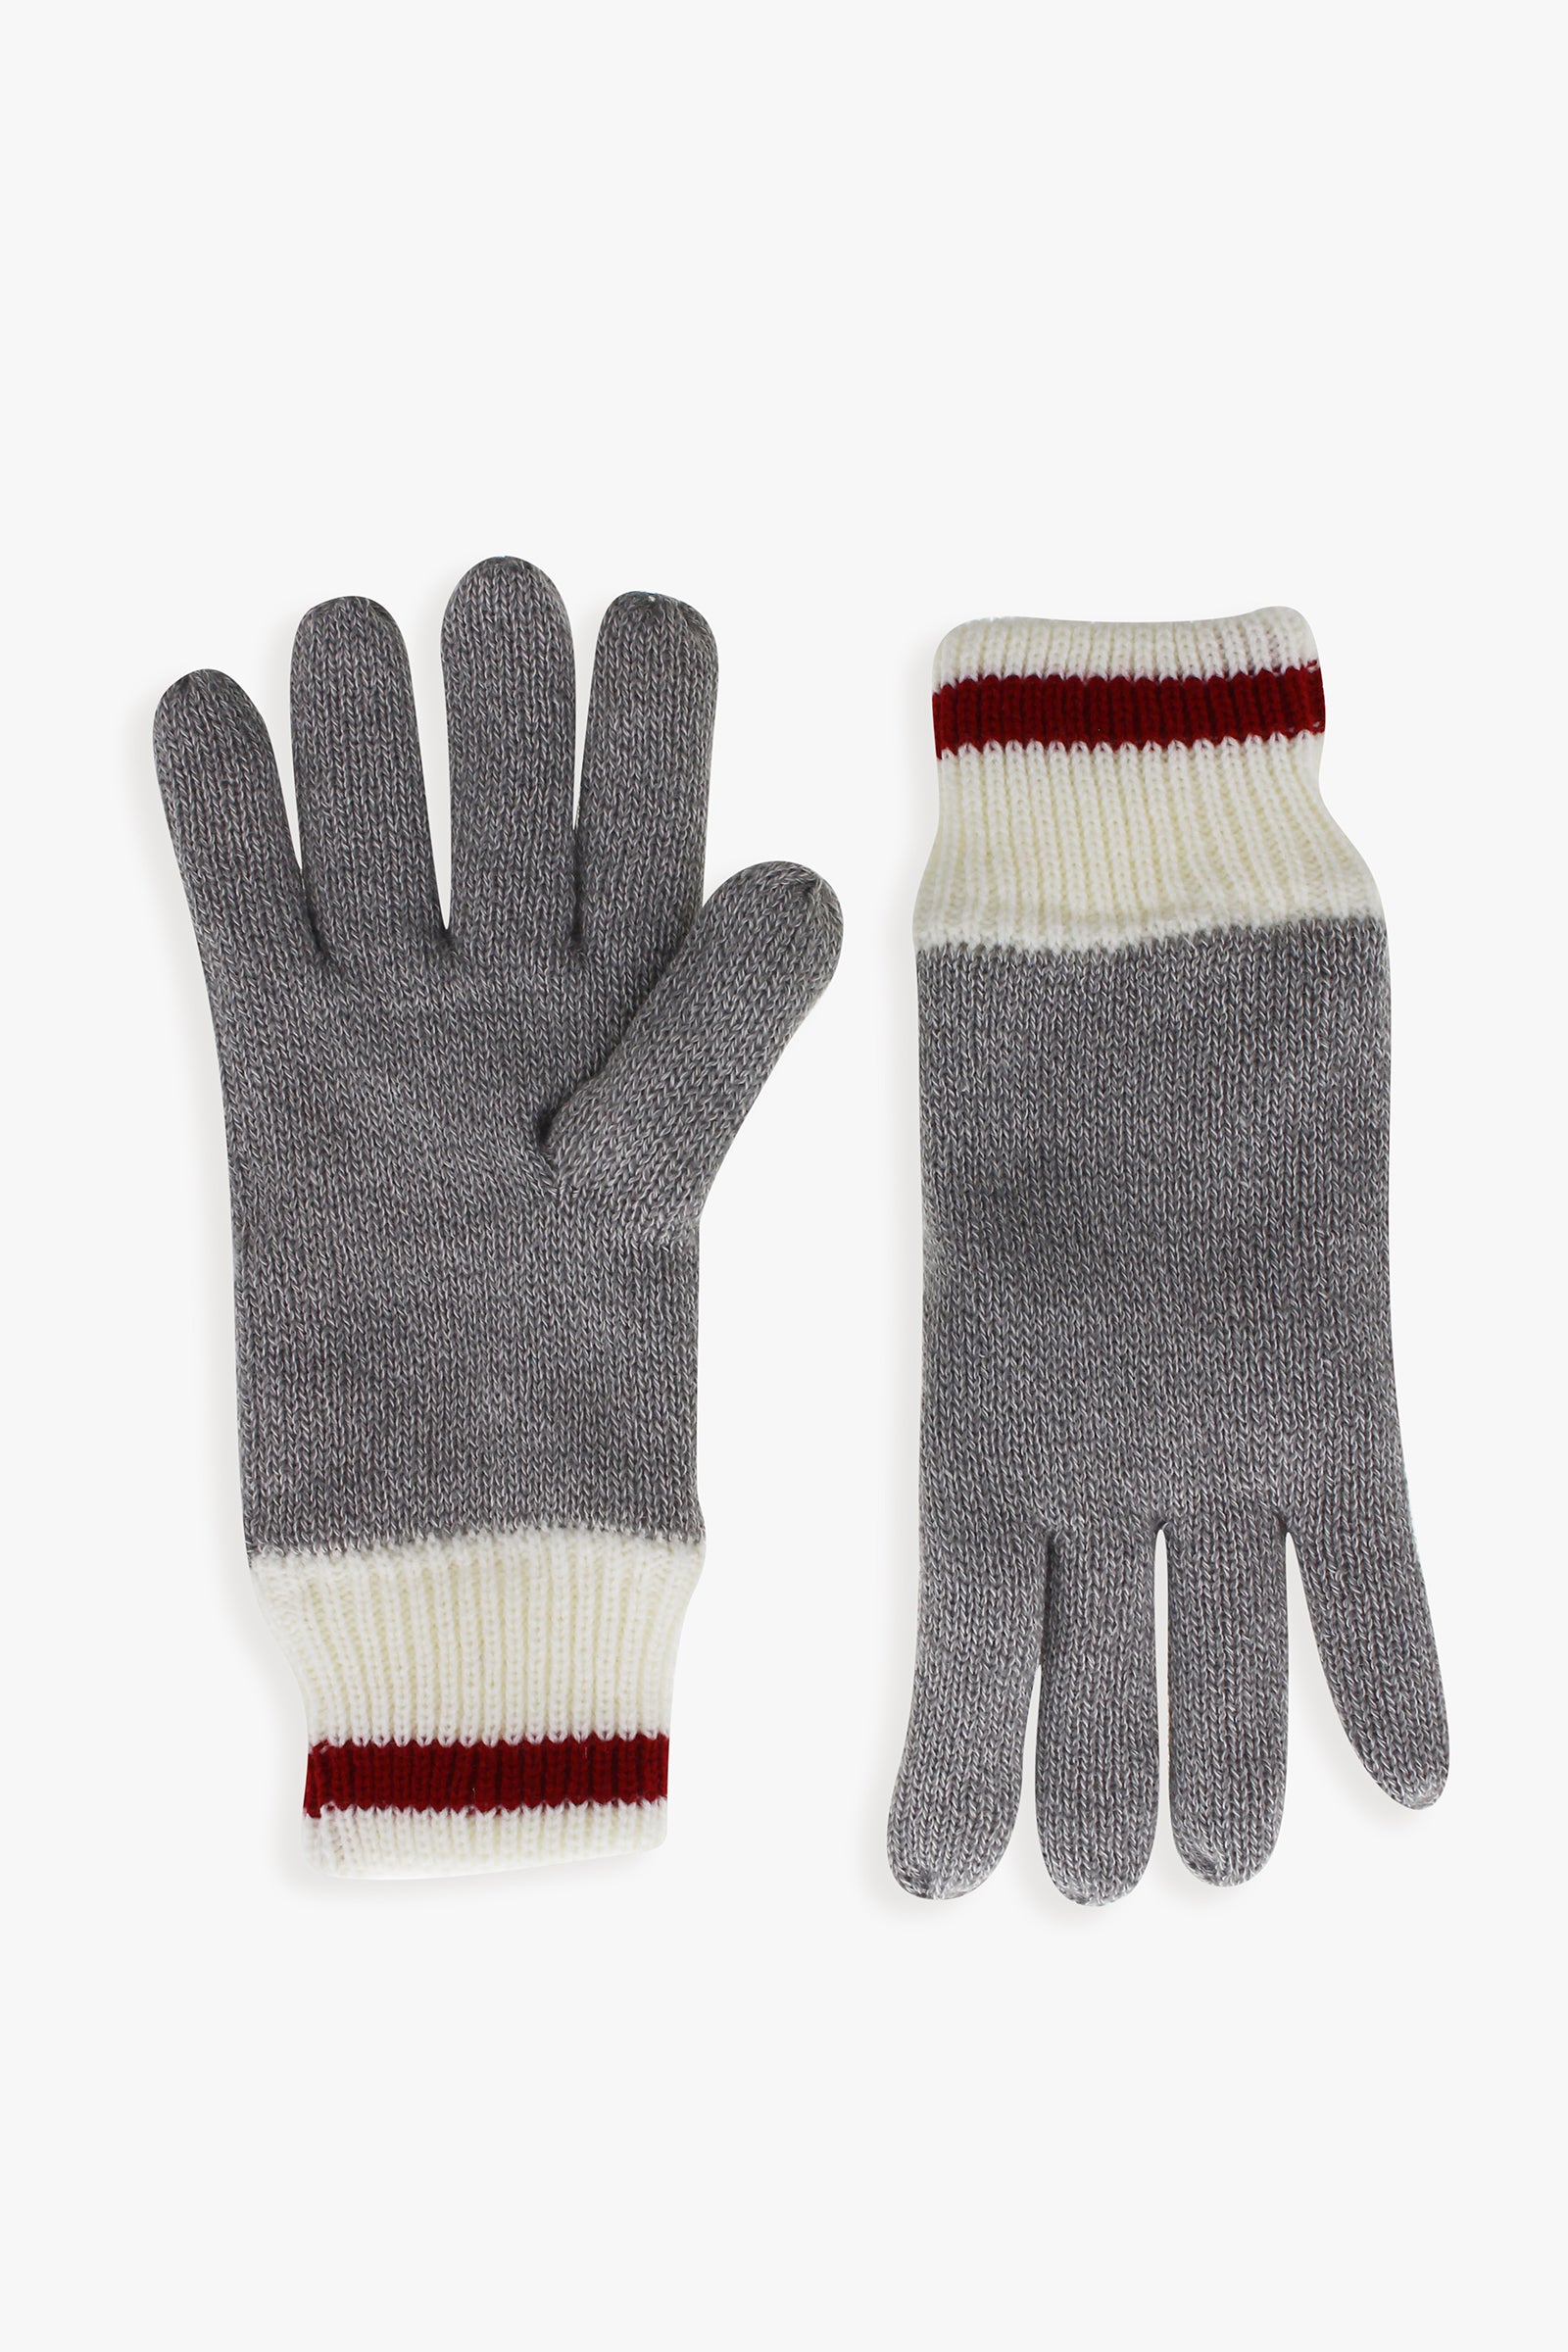 Great Northern Men's Fleece Lined Glove